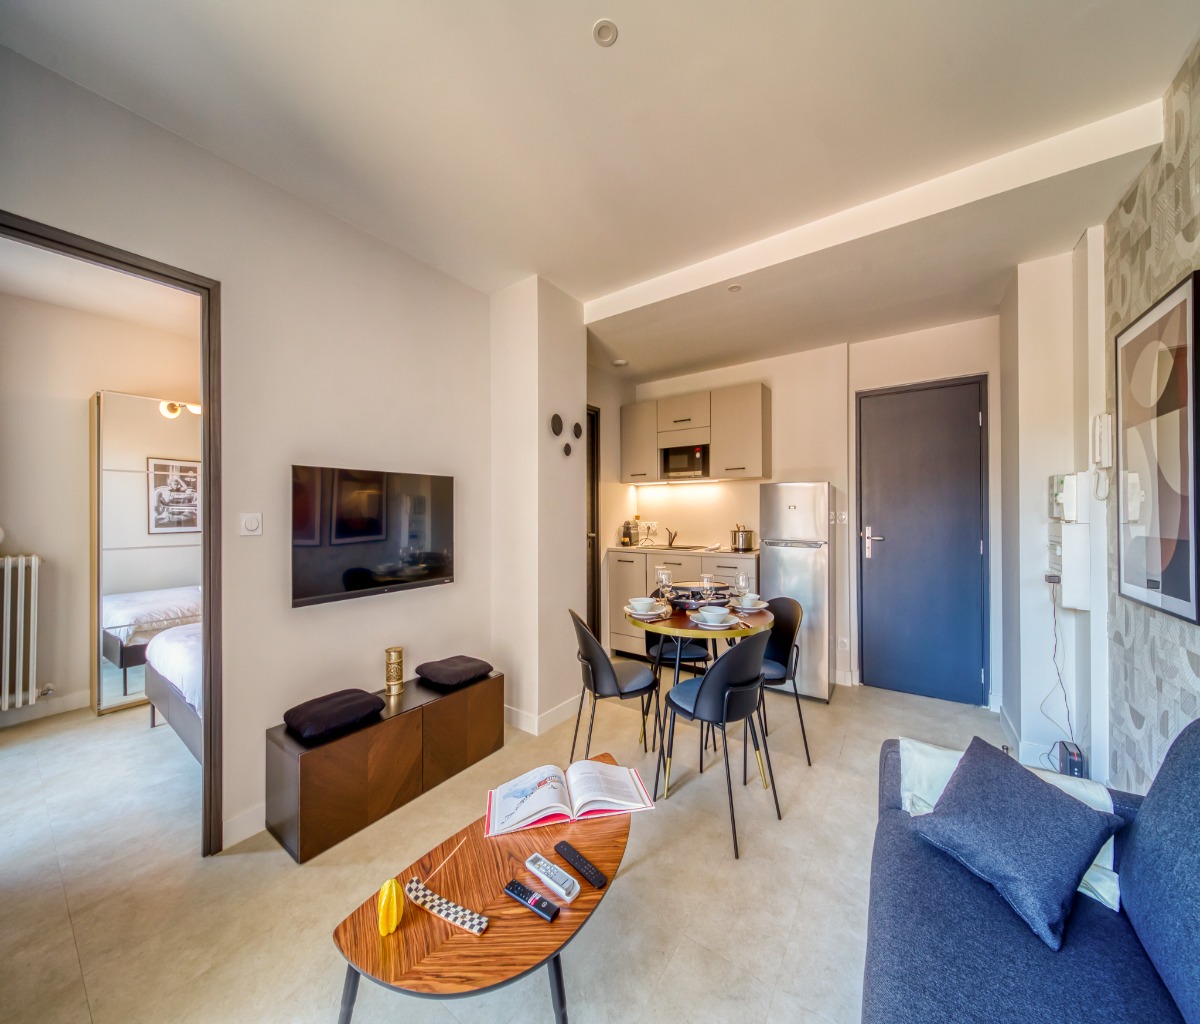 Le spacieux 4 location meublée Grenoble tout confort court et long séjour - appartement Grenoble Alpes Métropole - Location de vacances - Grenoble